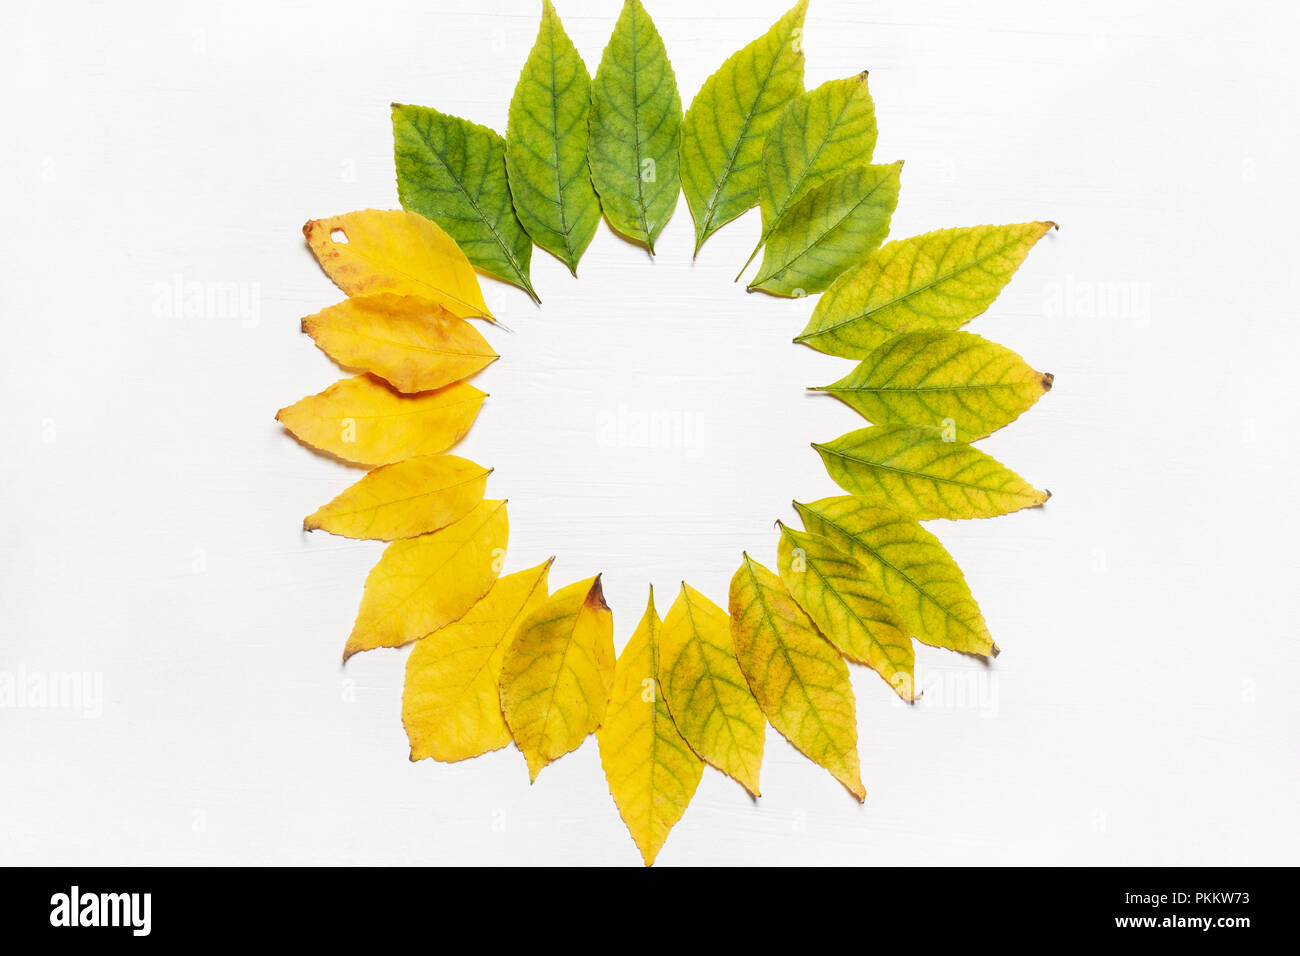 Cadre de feuilles jaunes et vertes. L' affichage. Concept d'automne Banque D'Images